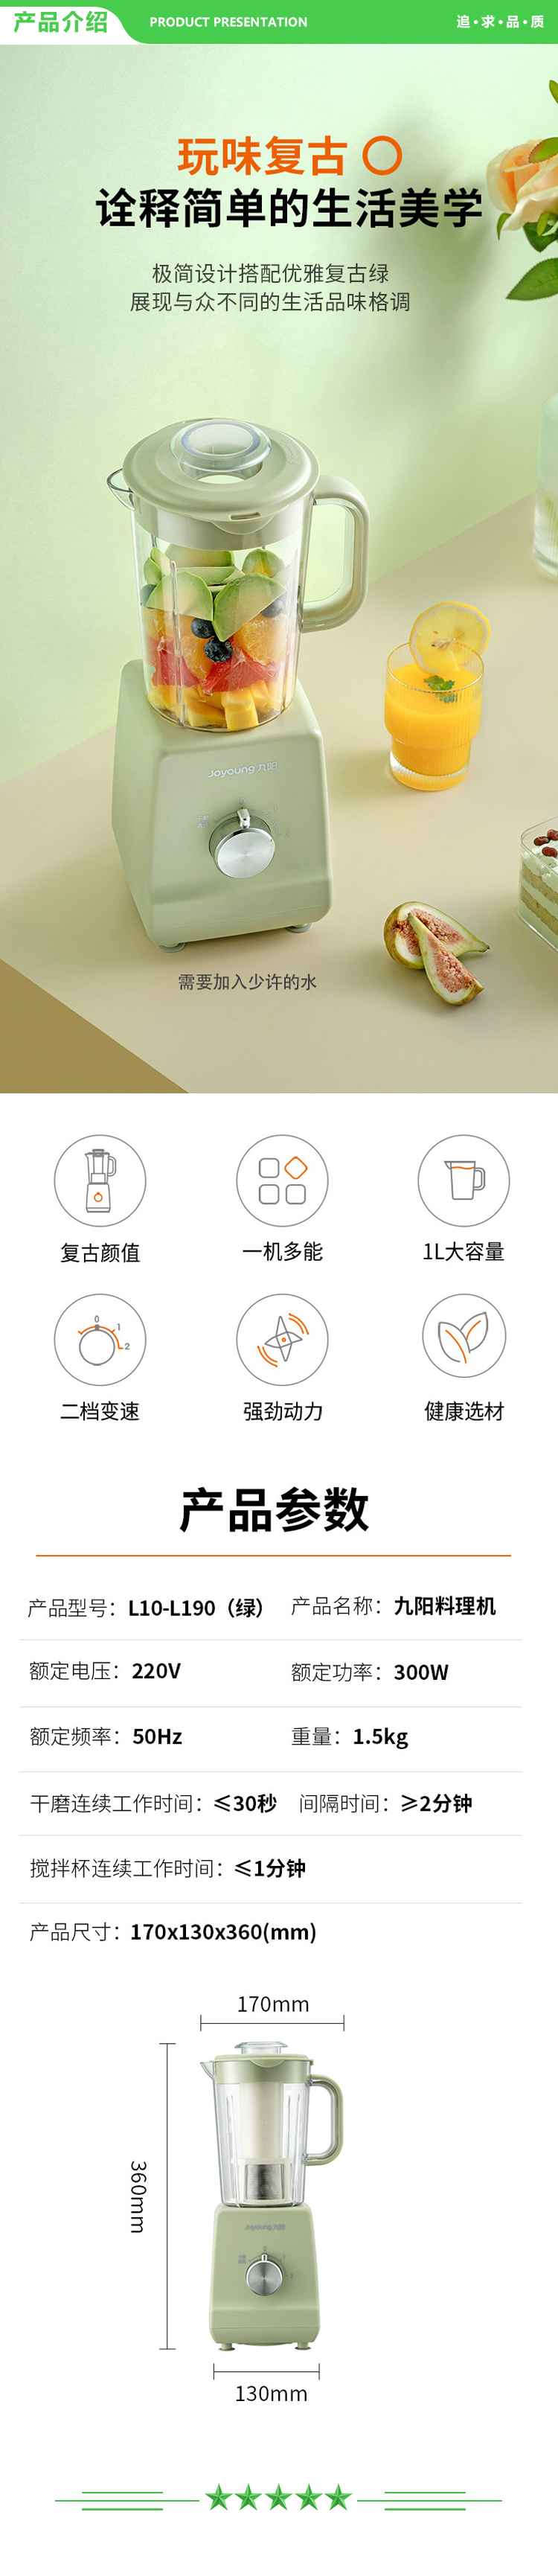 九阳 Joyoung L10-C25D 料理机家用多功能果蔬榨汁机搅拌机榨汁机 双杯.jpg